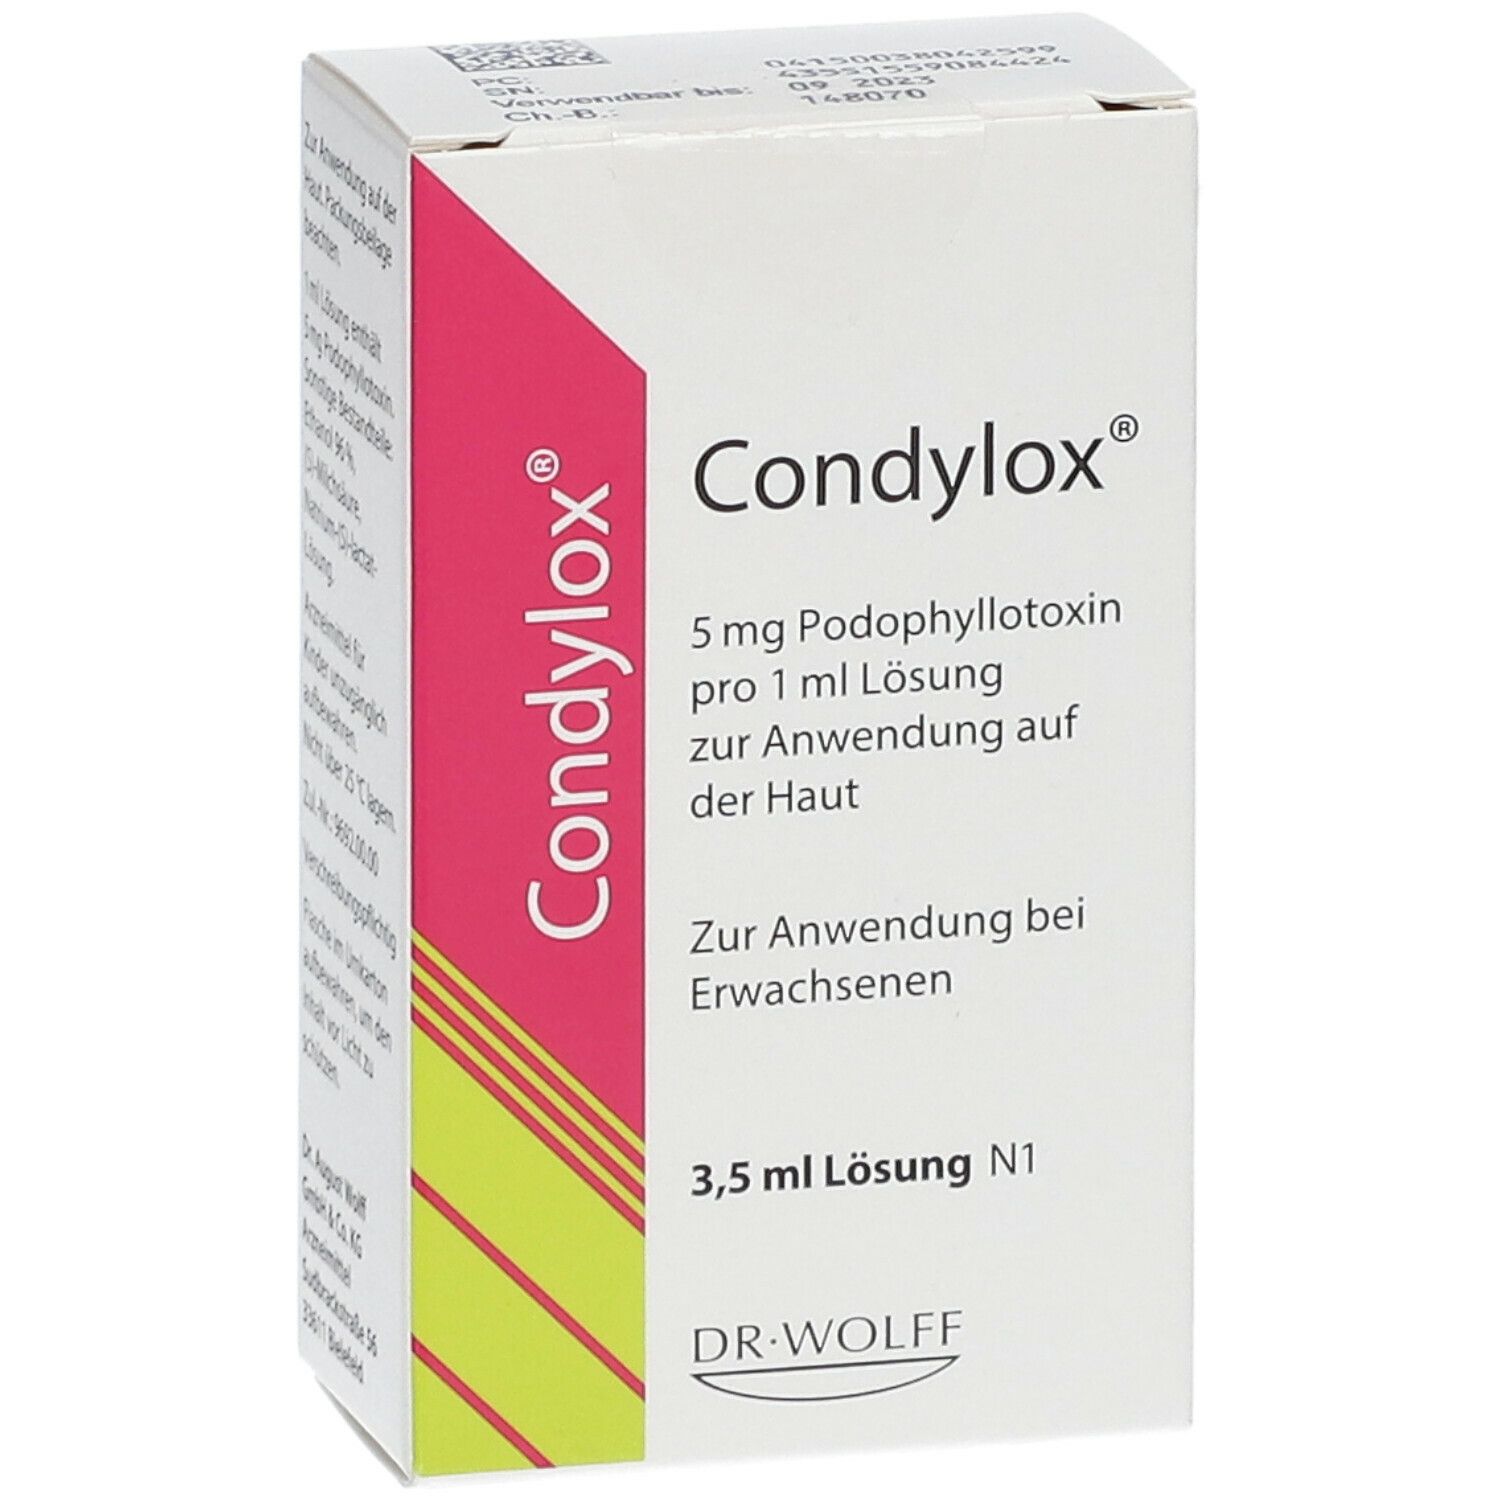 Condylox®